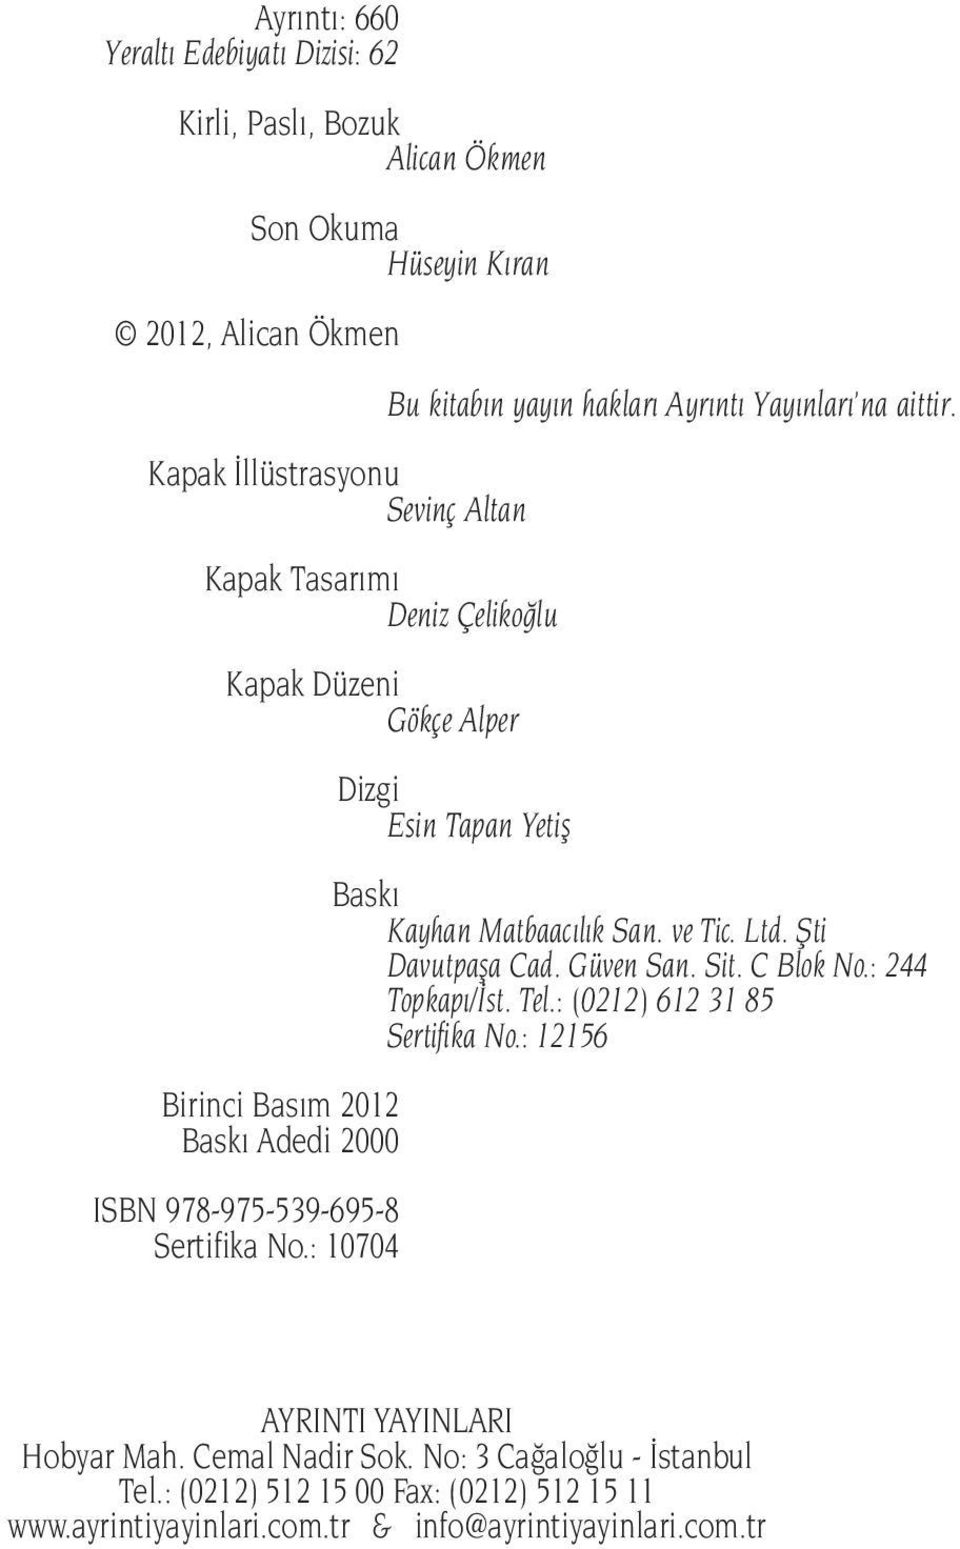 Sertifika No.: 10704 Baskı Kayhan Matbaacılık San. ve Tic. Ltd. Şti Davutpaşa Cad. Güven San. Sit. C Blok No.: 244 Topkapı/İst. Tel.: (0212) 612 31 85 Sertifika No.